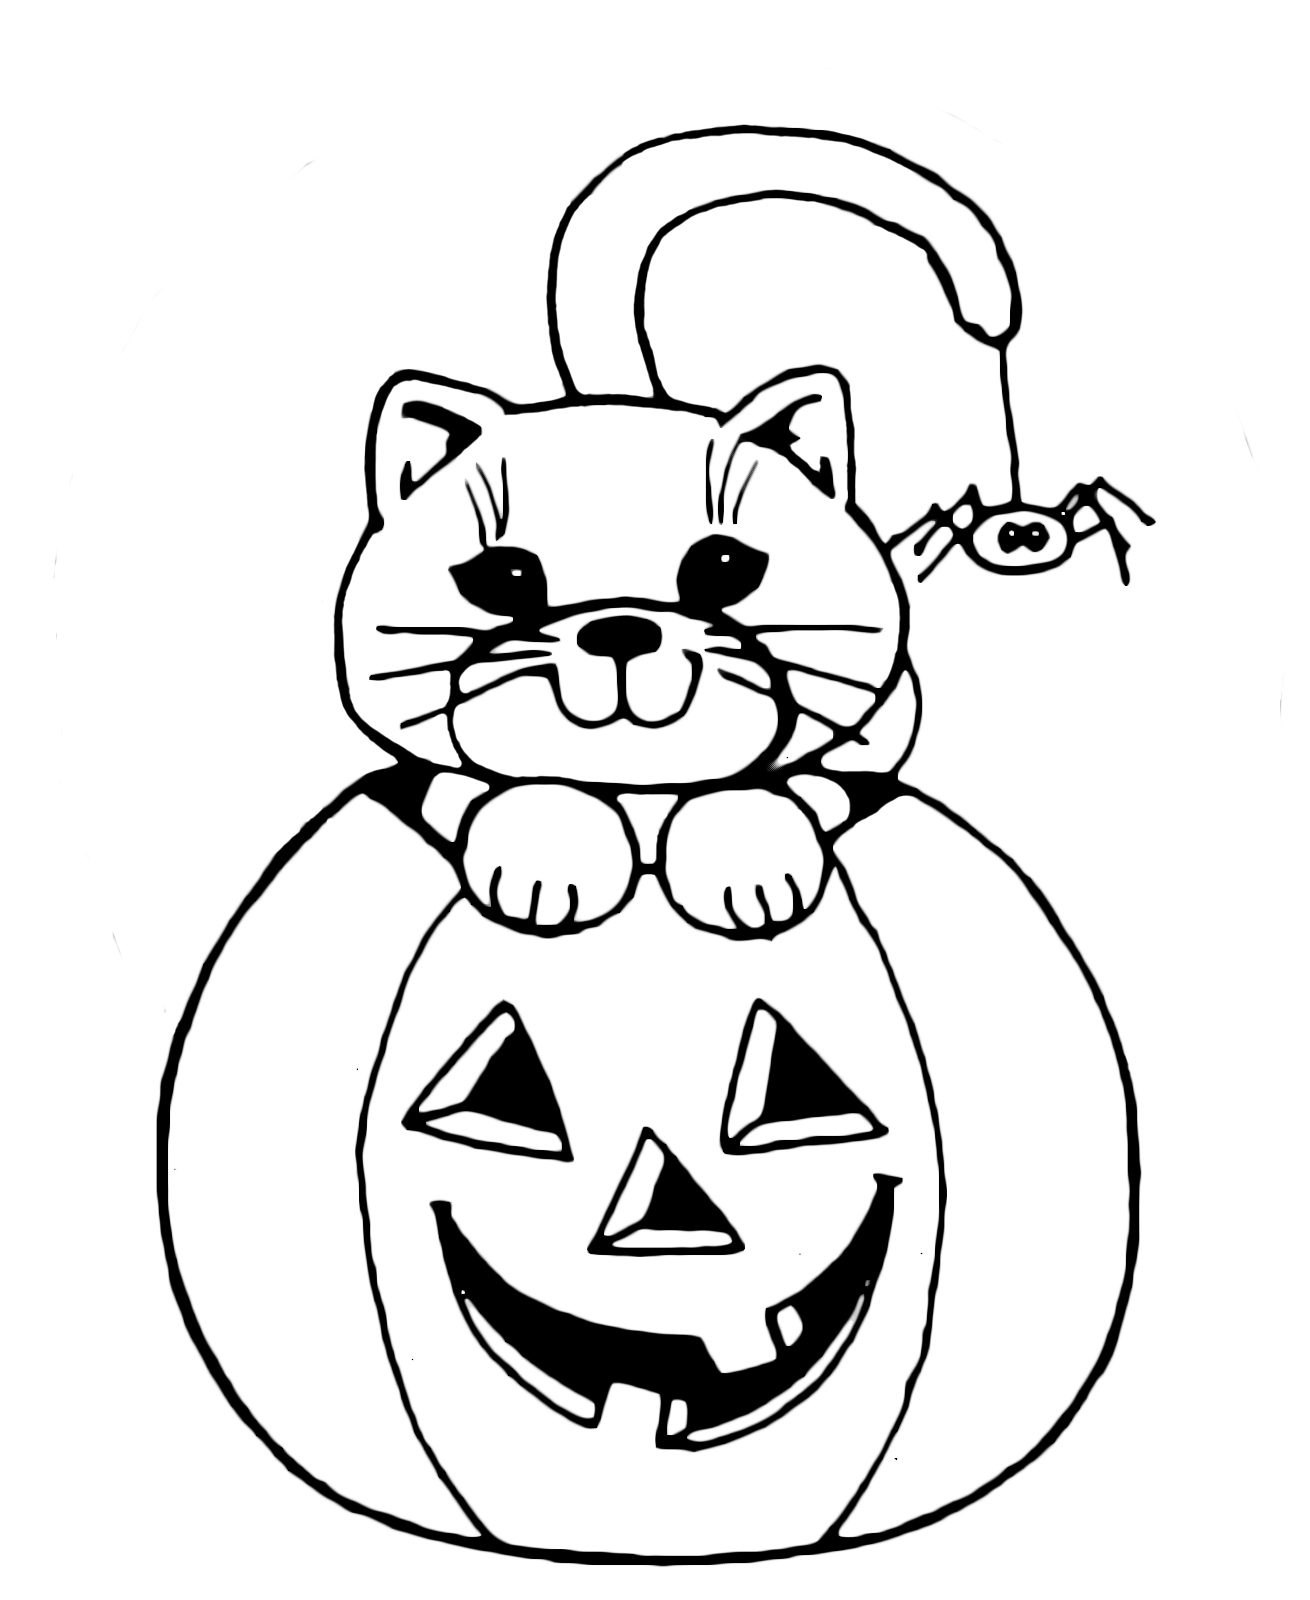 Halloween - Il gattino dentro la zucca con il ragnetto attaccato alla coda